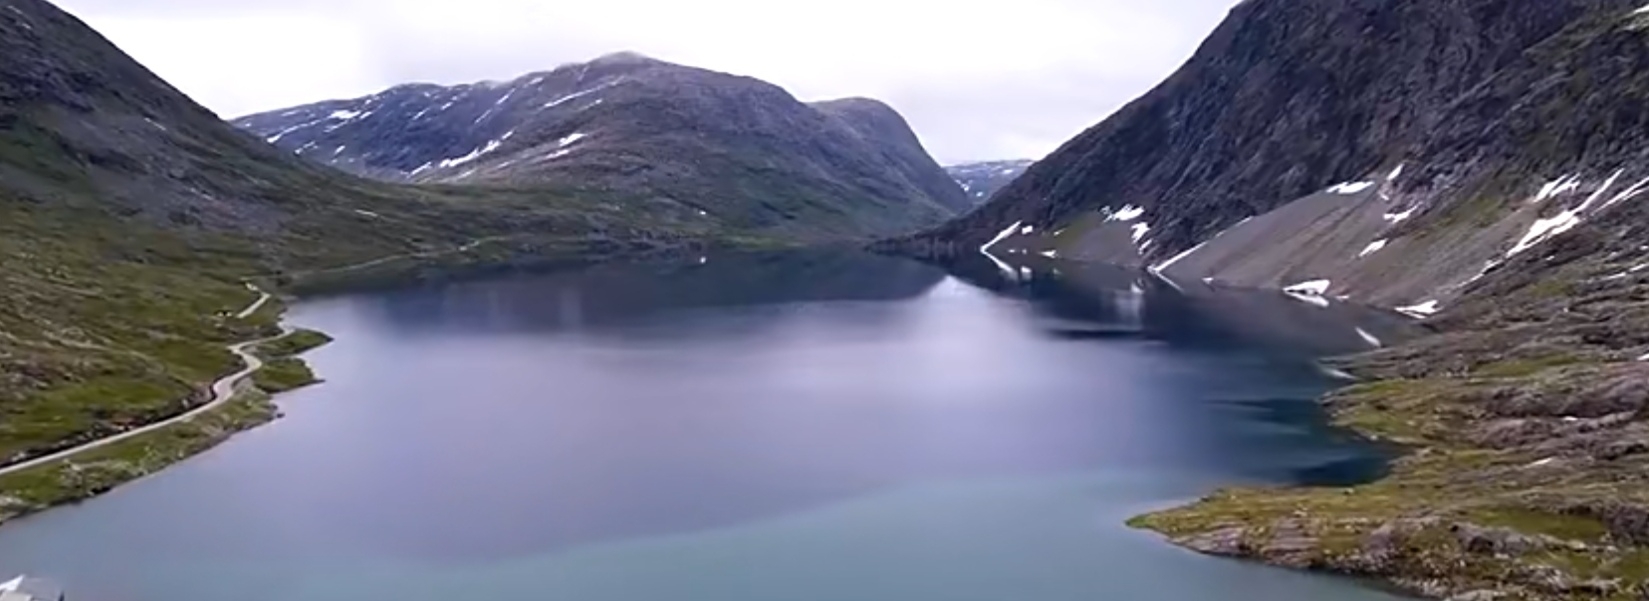 挪威蓝色湖泊